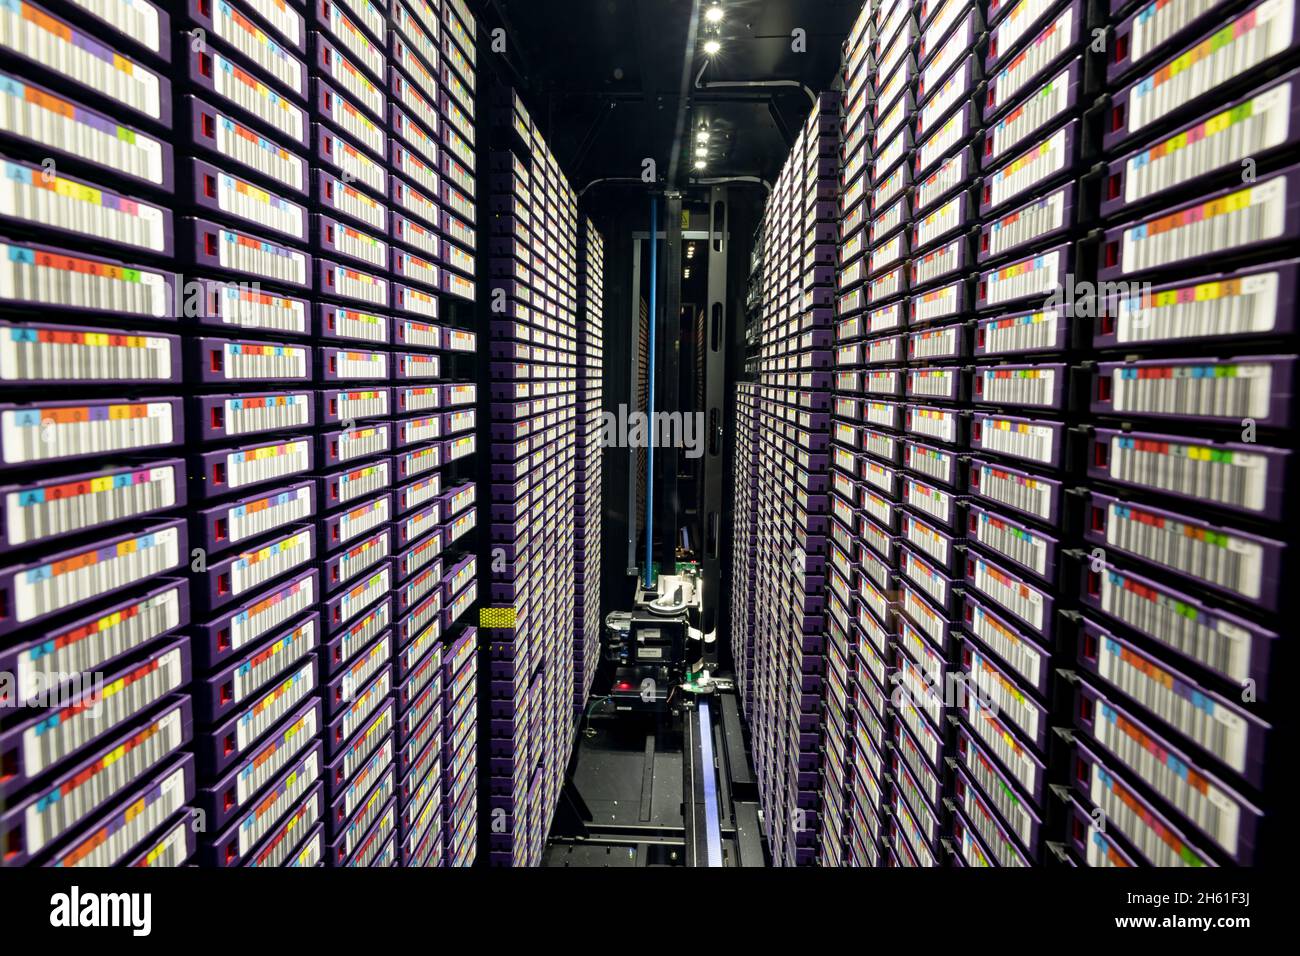 Rechenzentrum mit mehreren Reihen voll funktionsfähiger Server-Racks Stockfoto